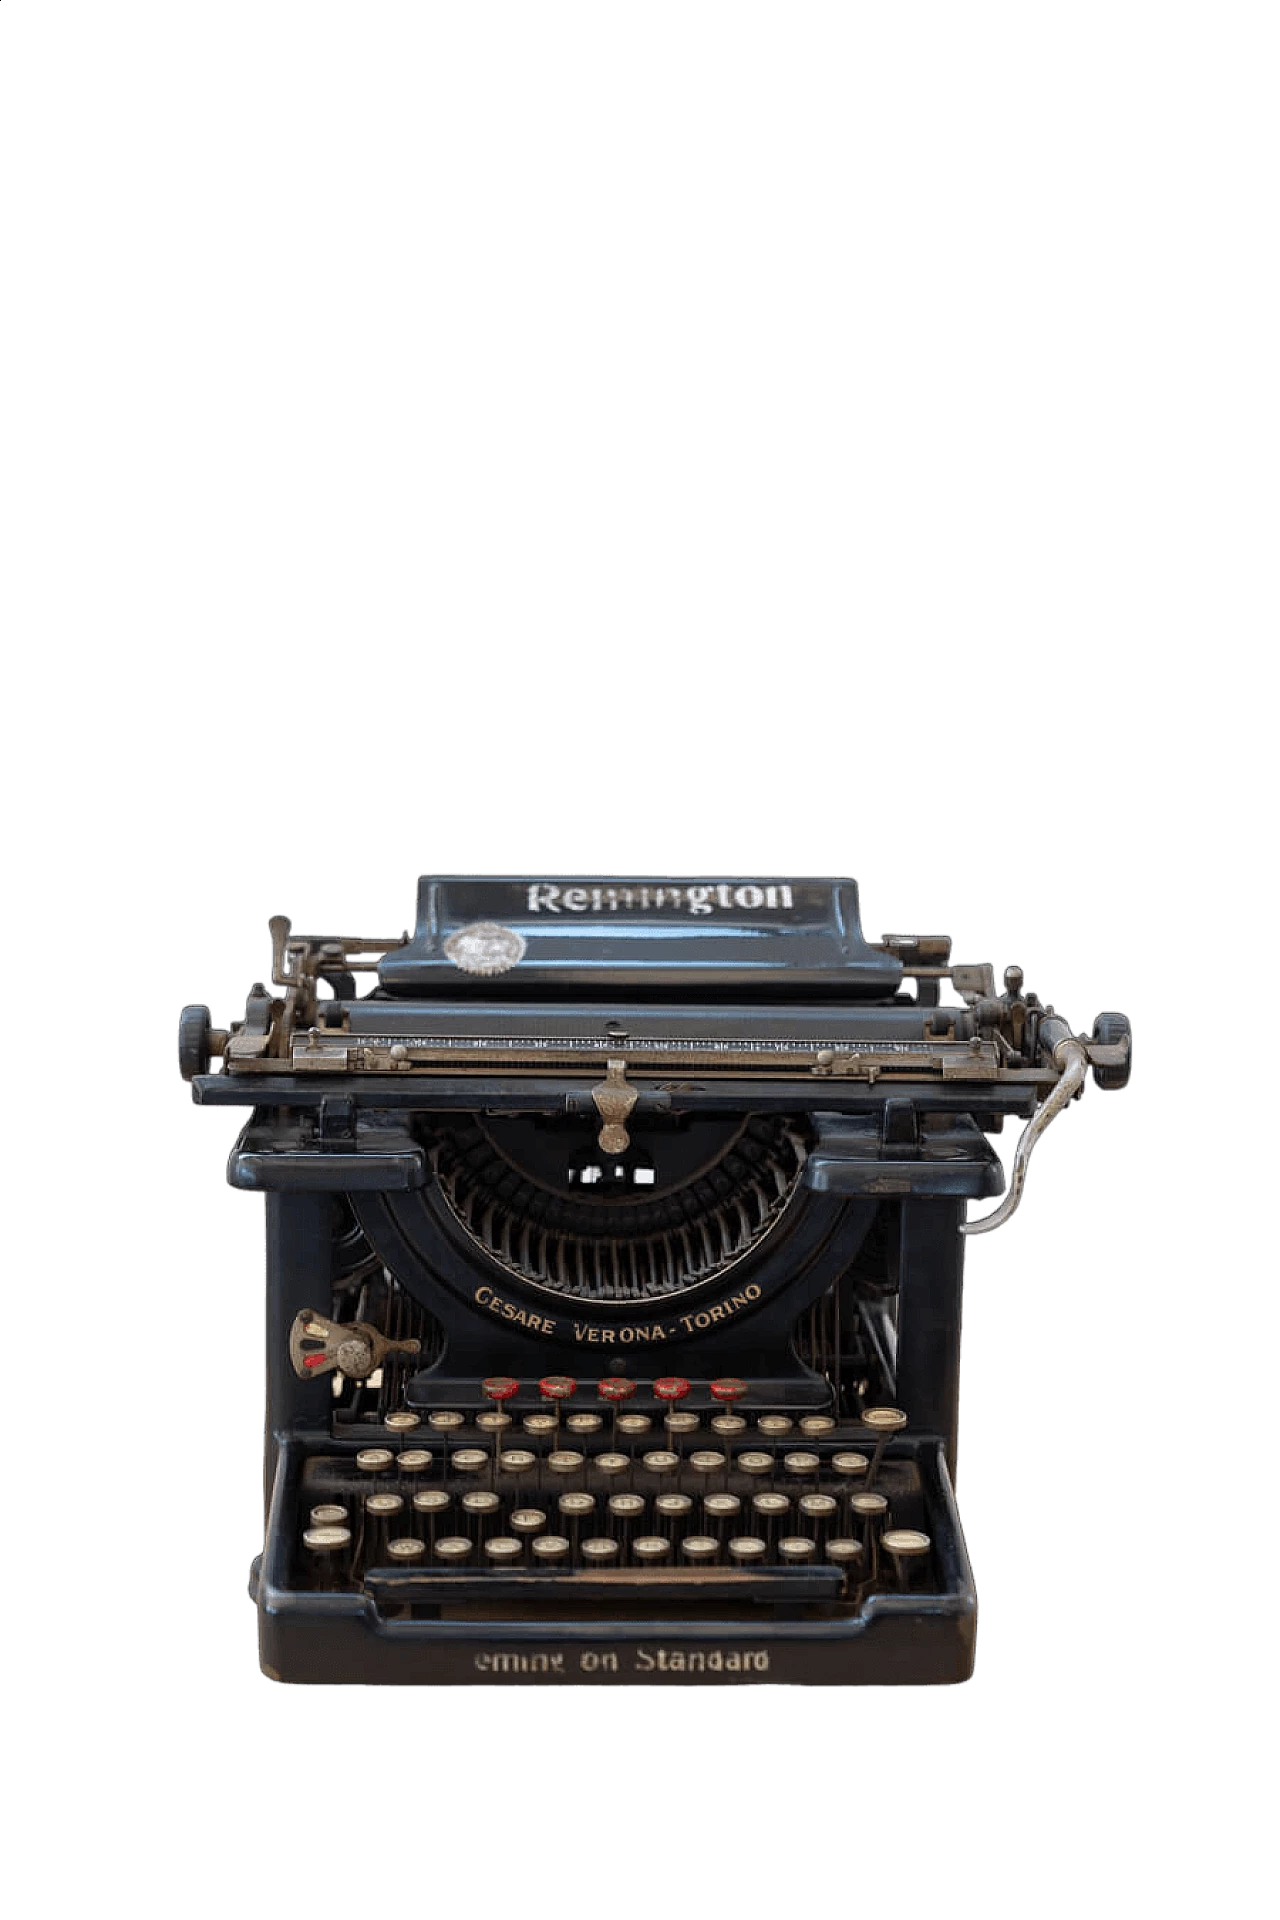 Remington metal typewriter, early 20th century 18